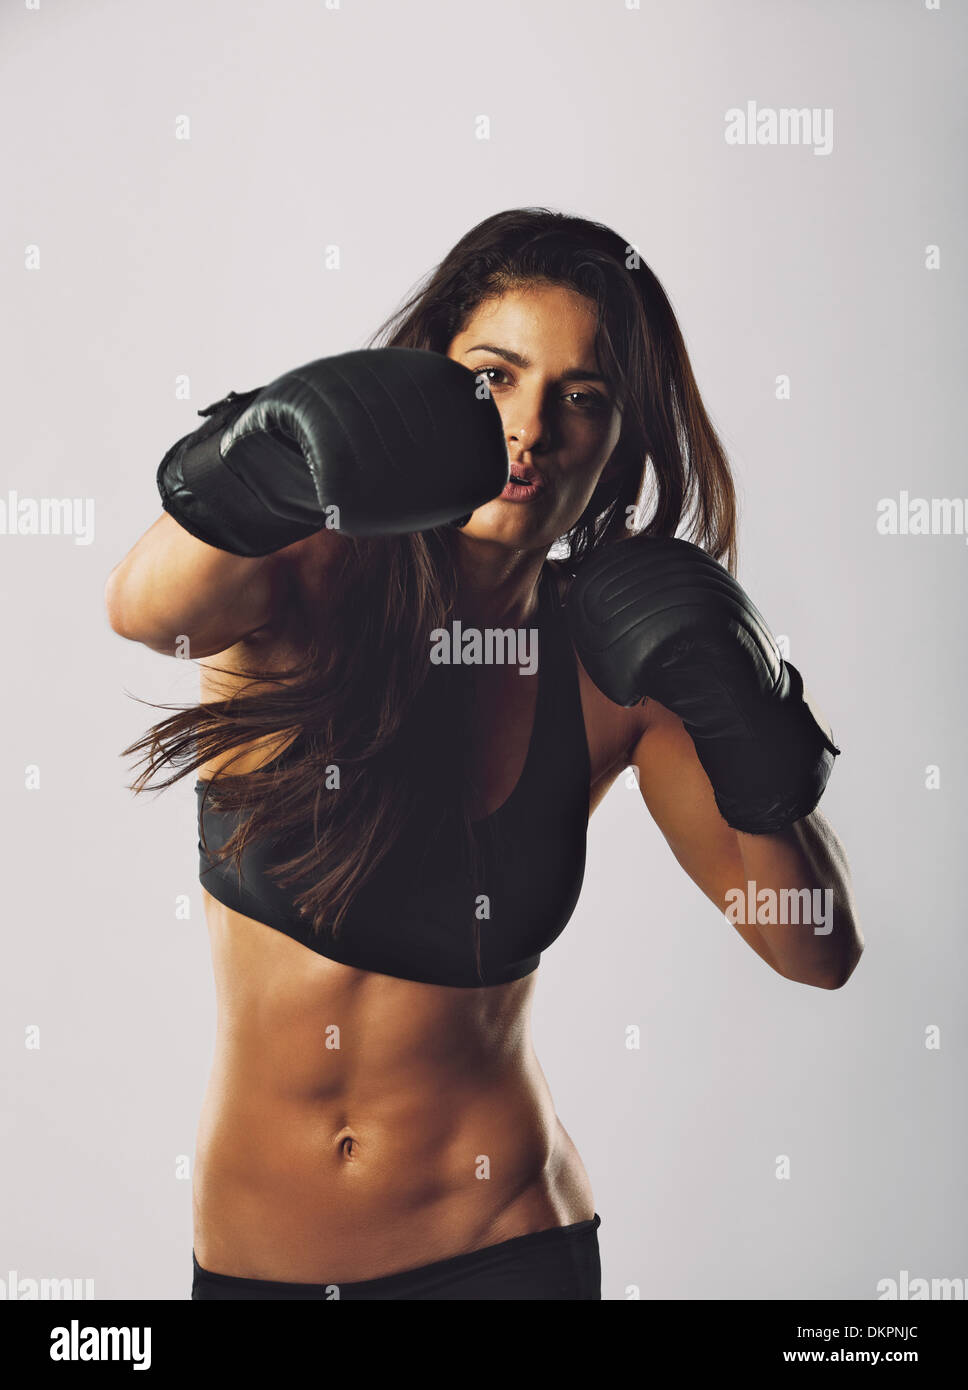 Deportes mixtos fotografías e imágenes de alta resolución - Alamy